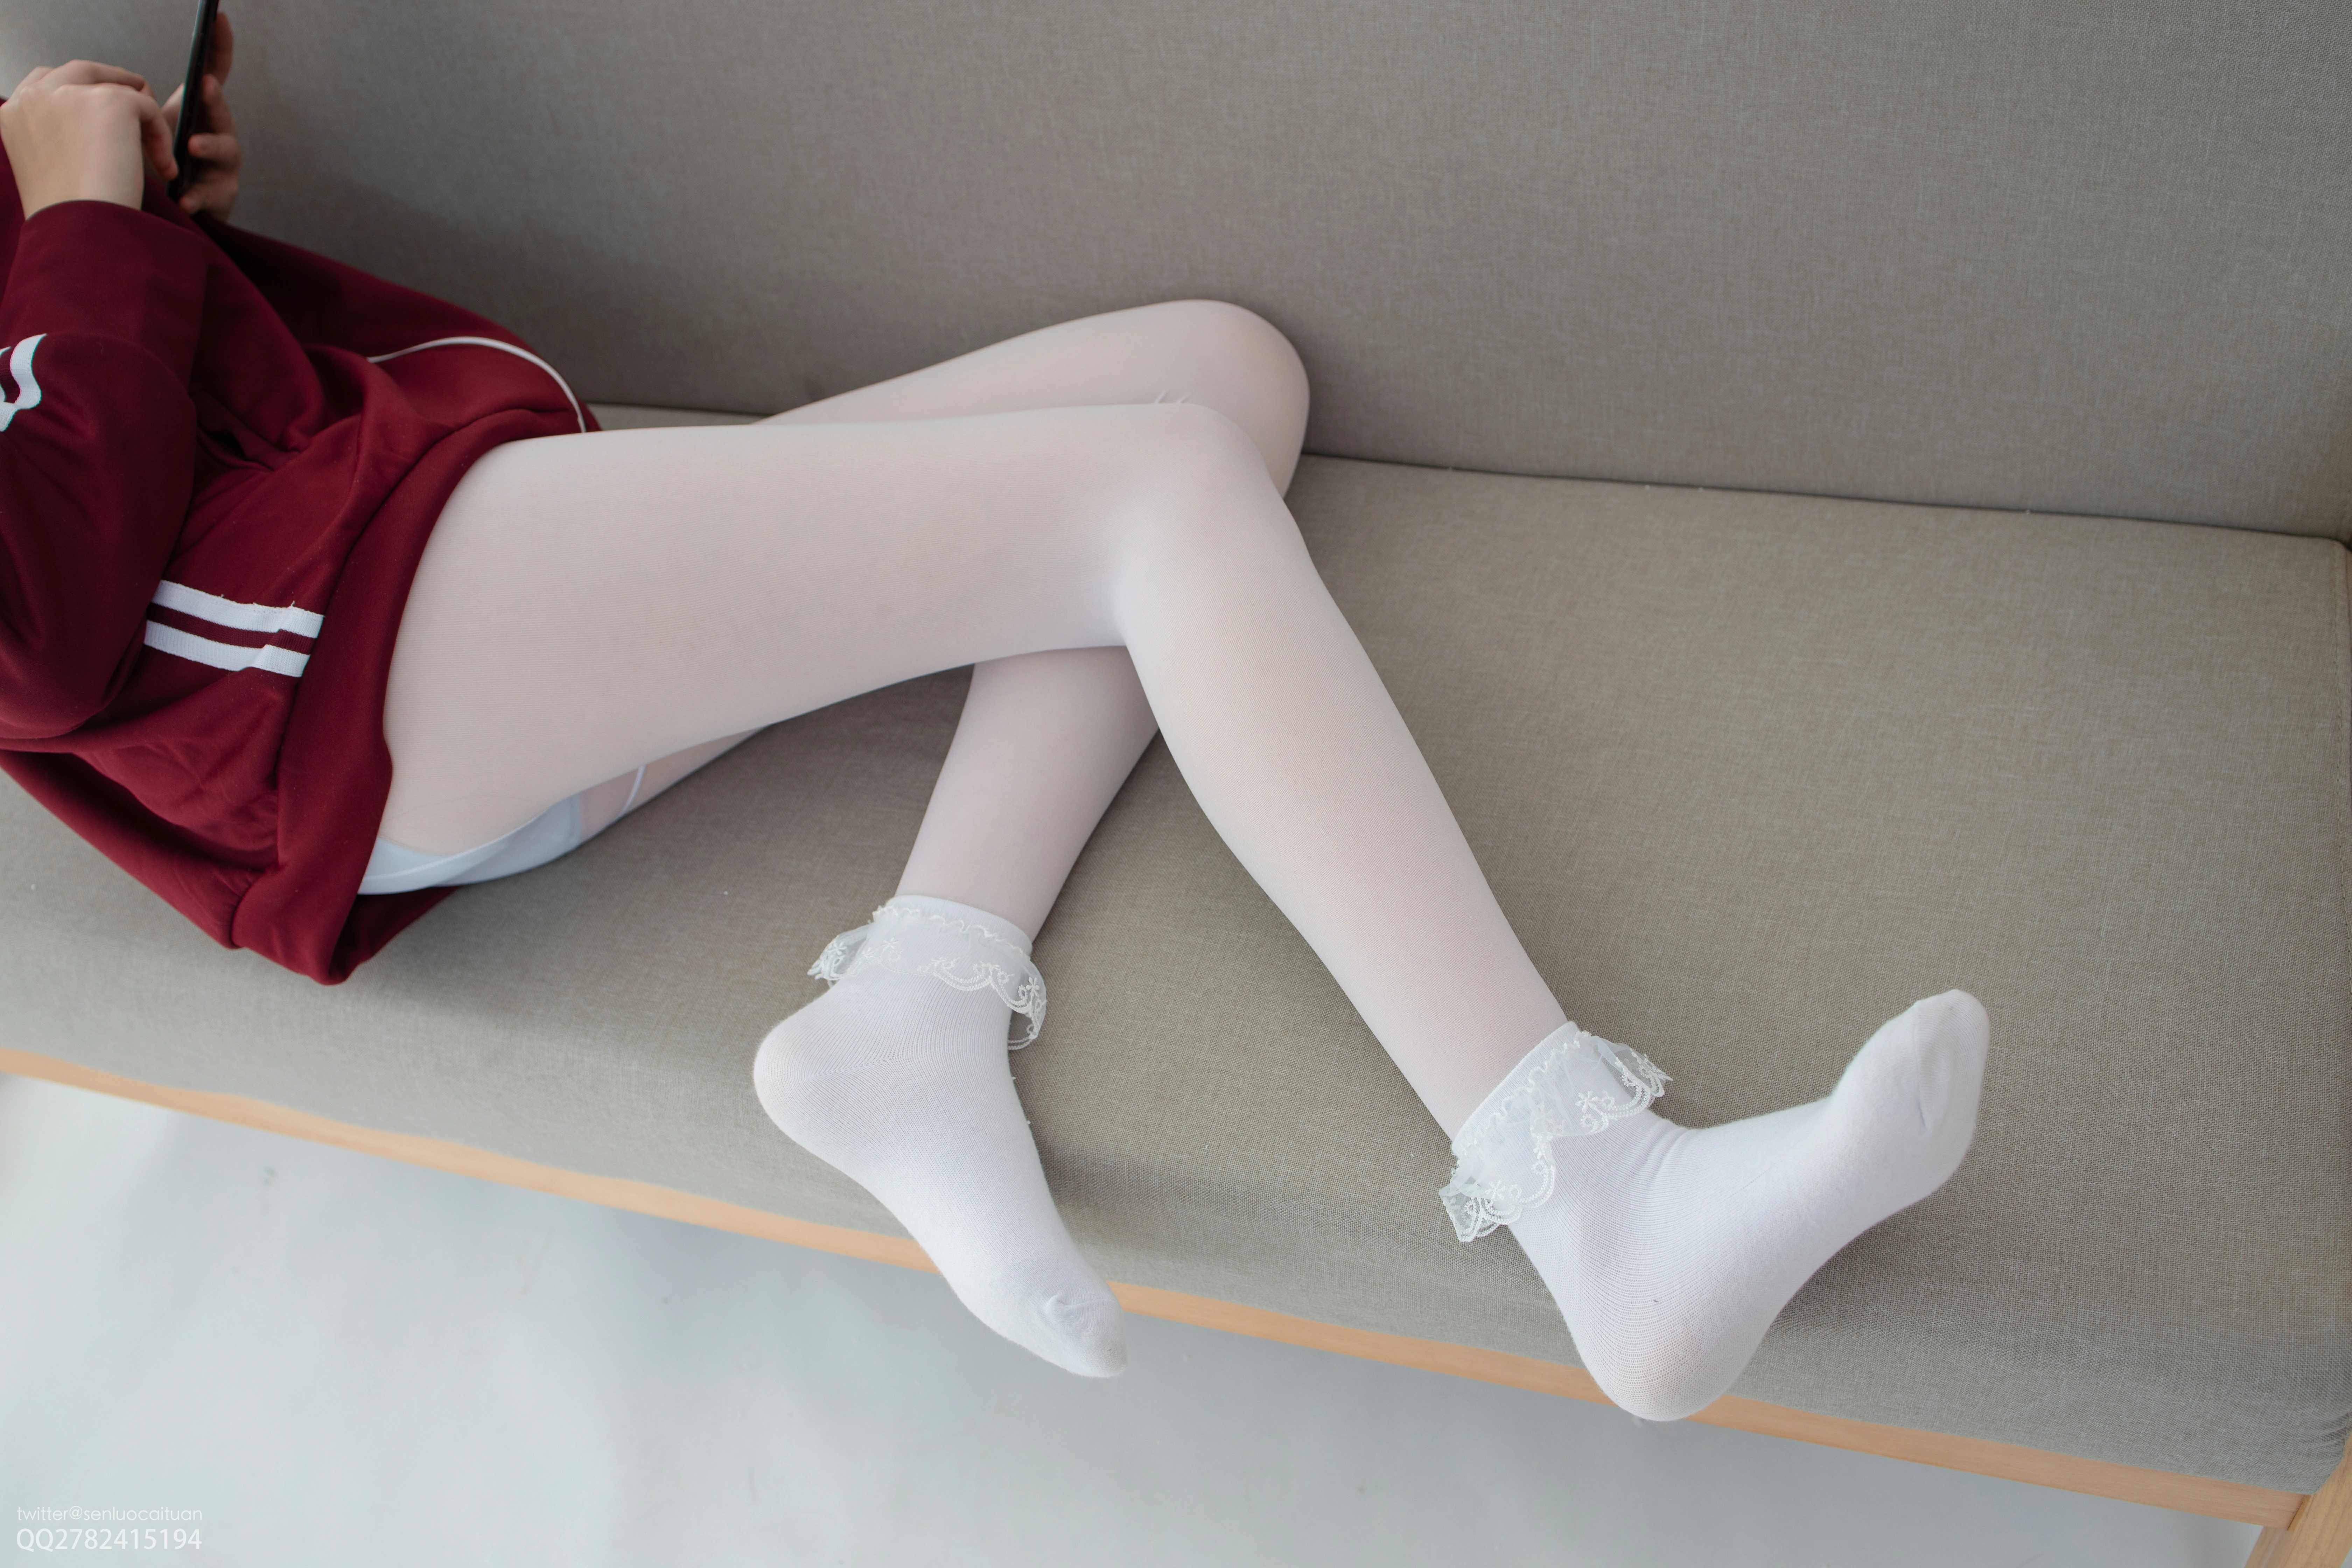 [森萝财团]JKFUN-百元系列2-3 《白丝套蕾丝花边短袜》 匿名 红色卫衣加白色丝袜美腿玉足性感私房写真集,